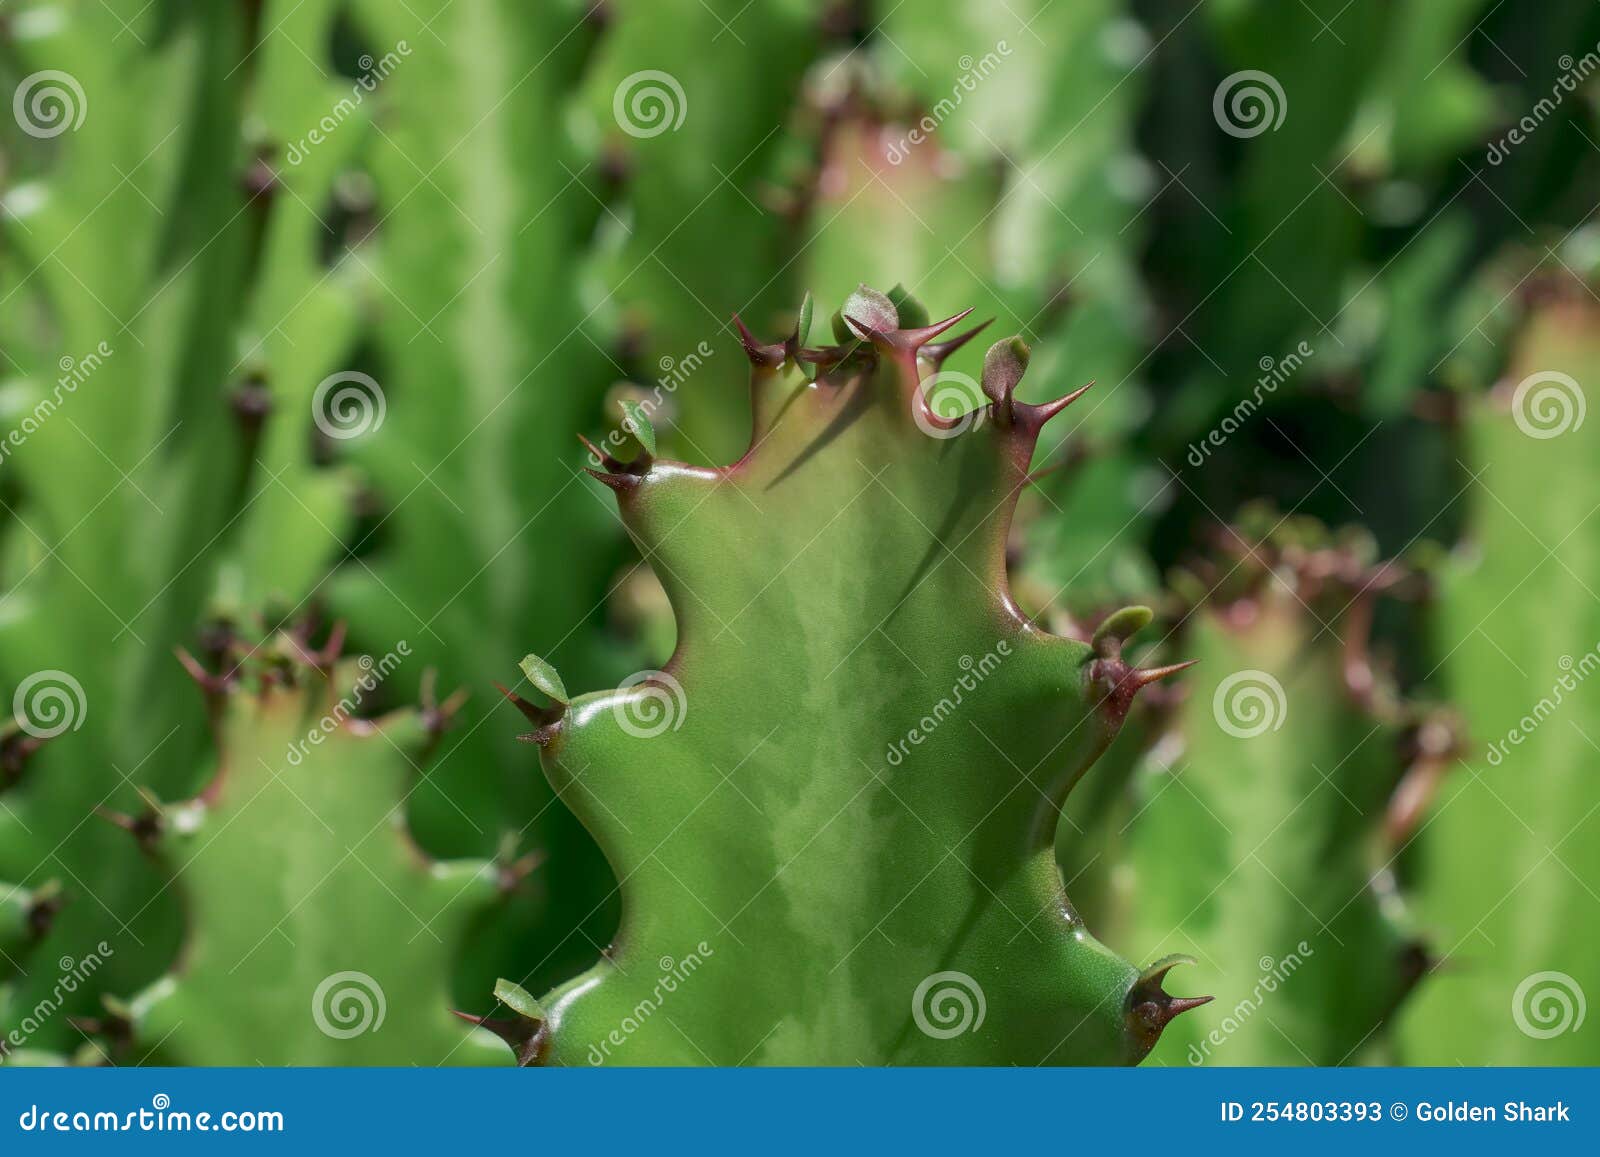 euphorbia resinifera cactus with blue sky